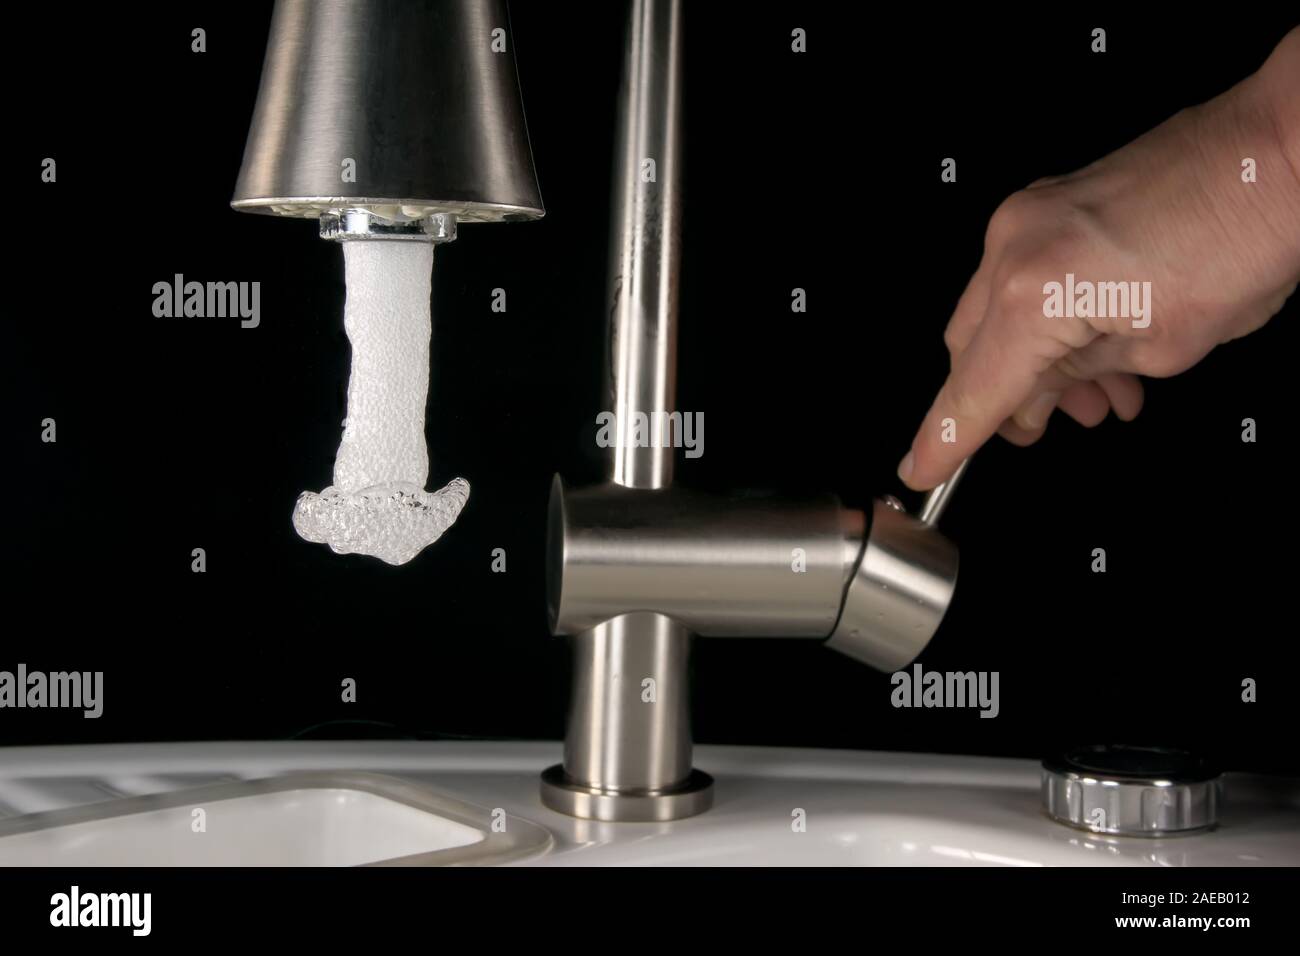 L'acqua uscente da un rubinetto - immagini ad alta velocità Foto Stock